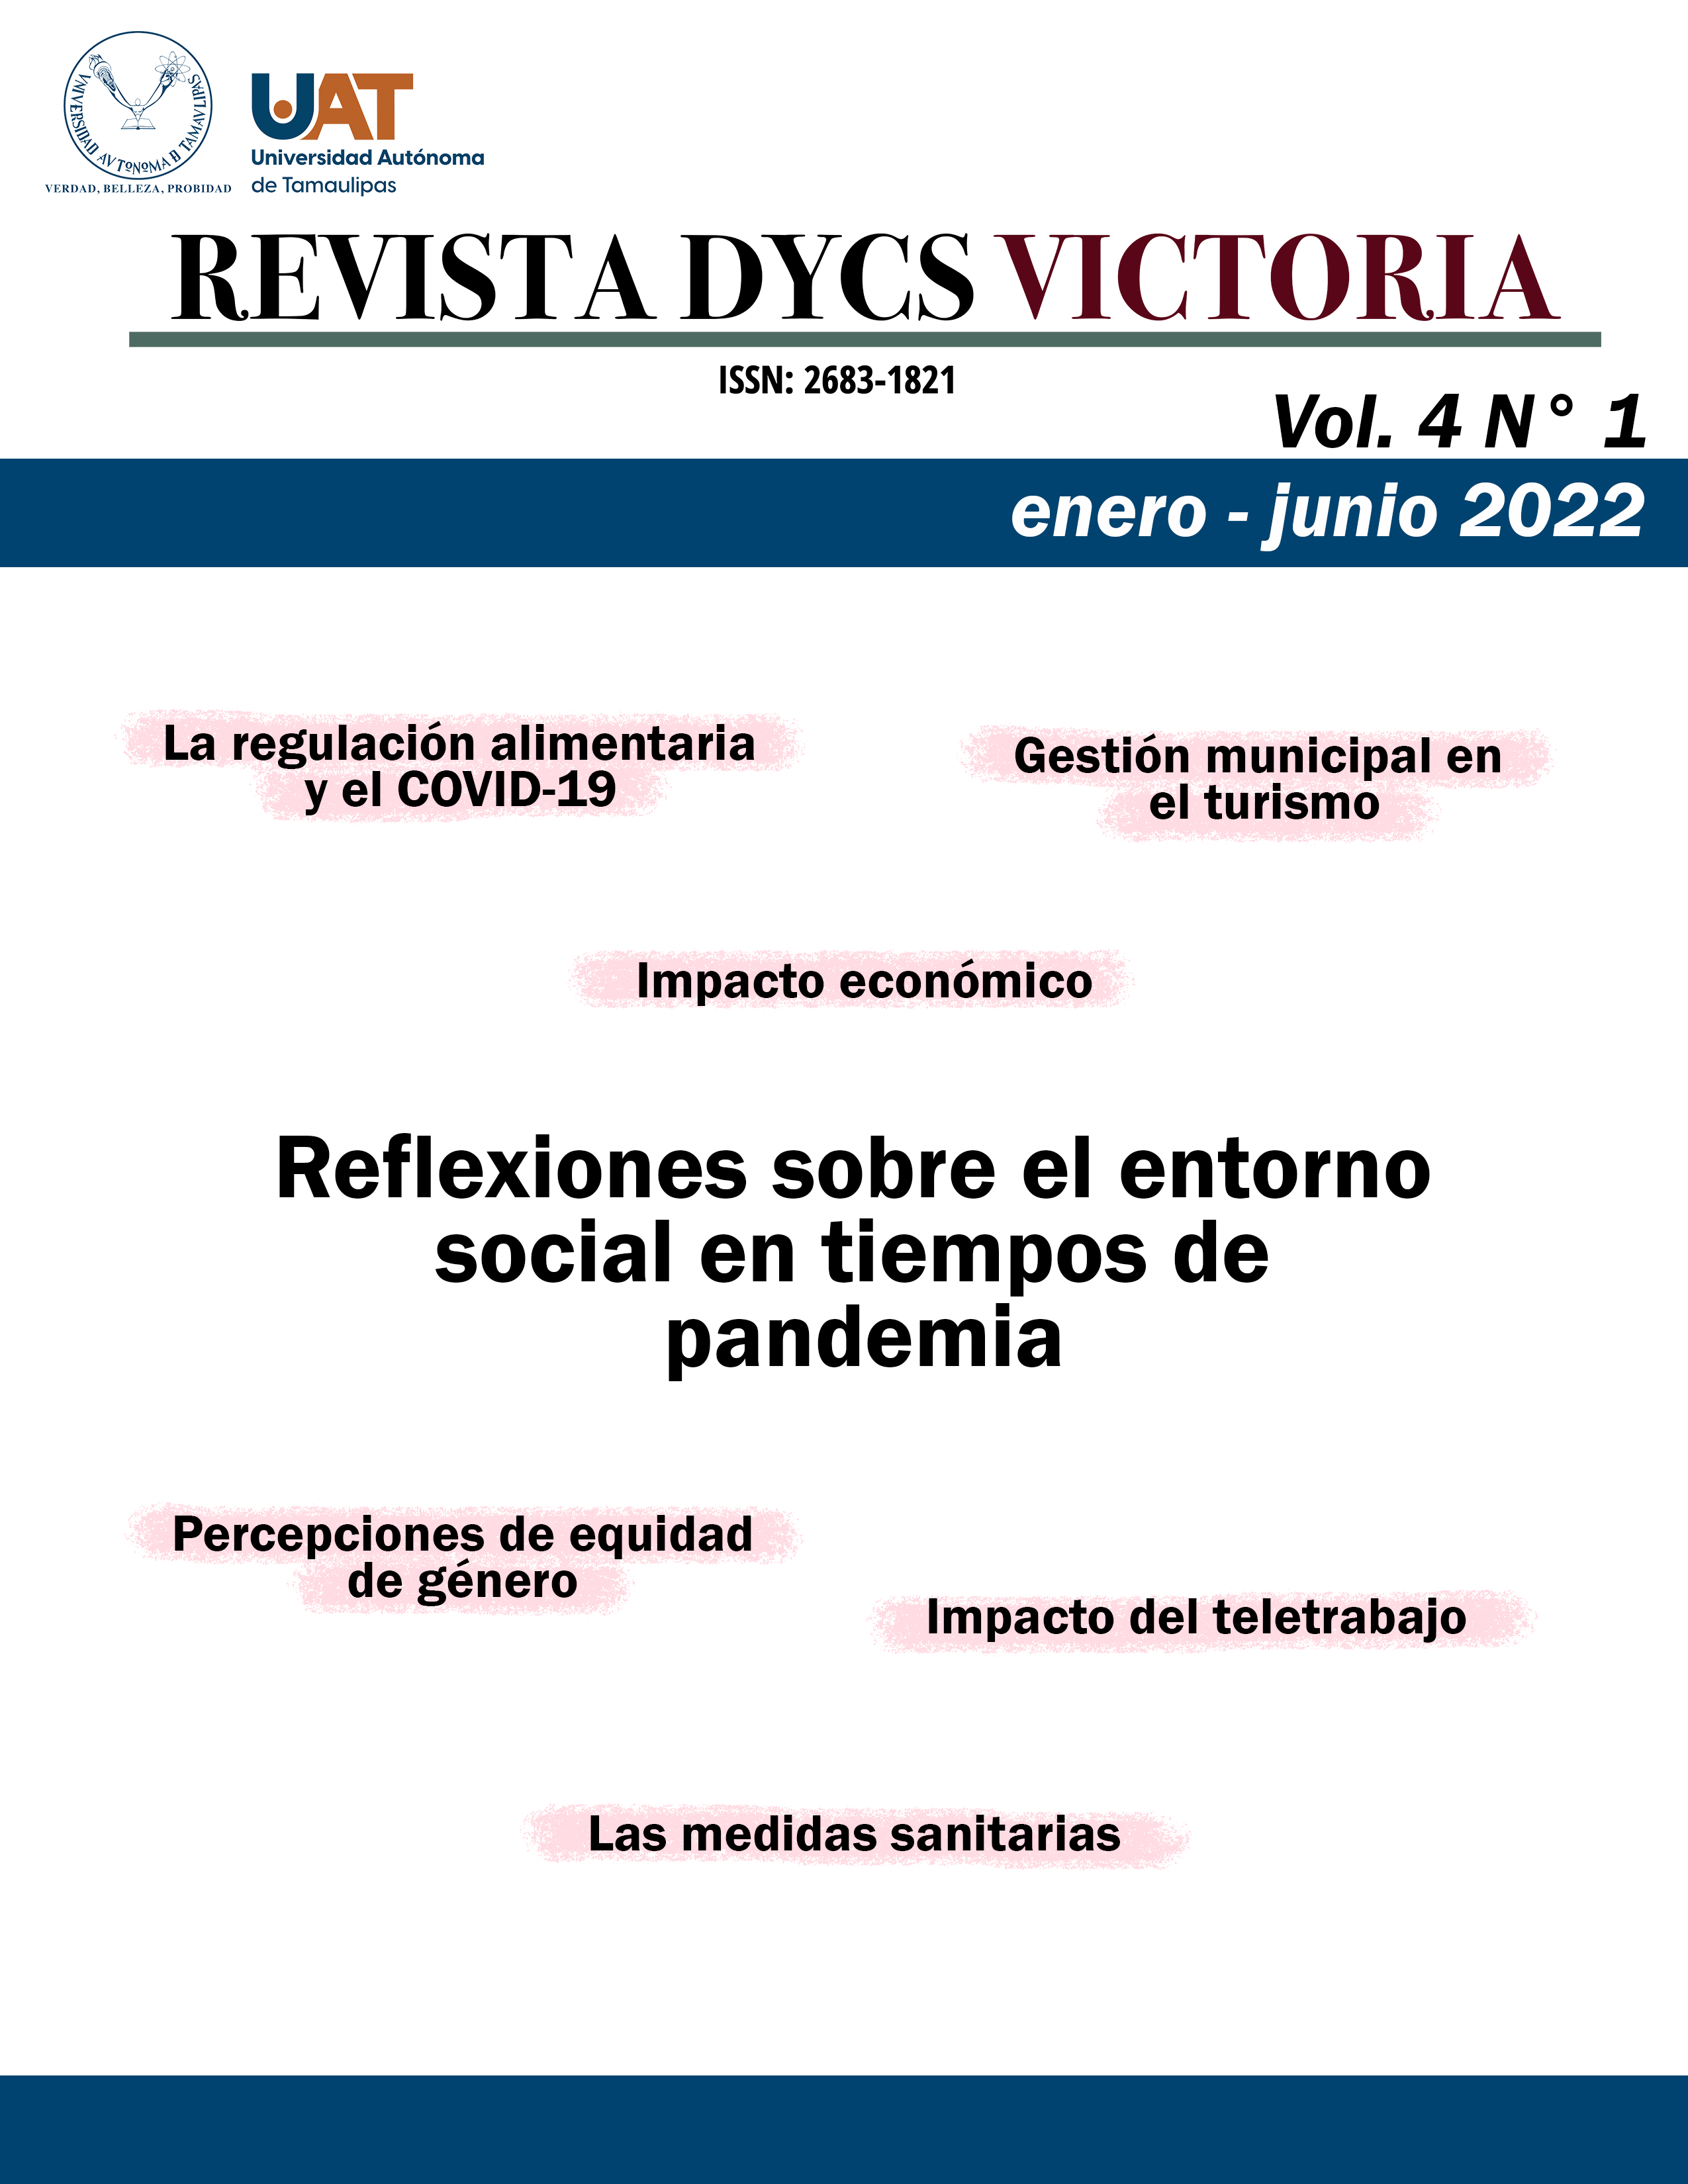 Vol. 4 N.° 1 (enero - junio 2022): Reflexiones sobre el entorno social en tiempos de pandemia